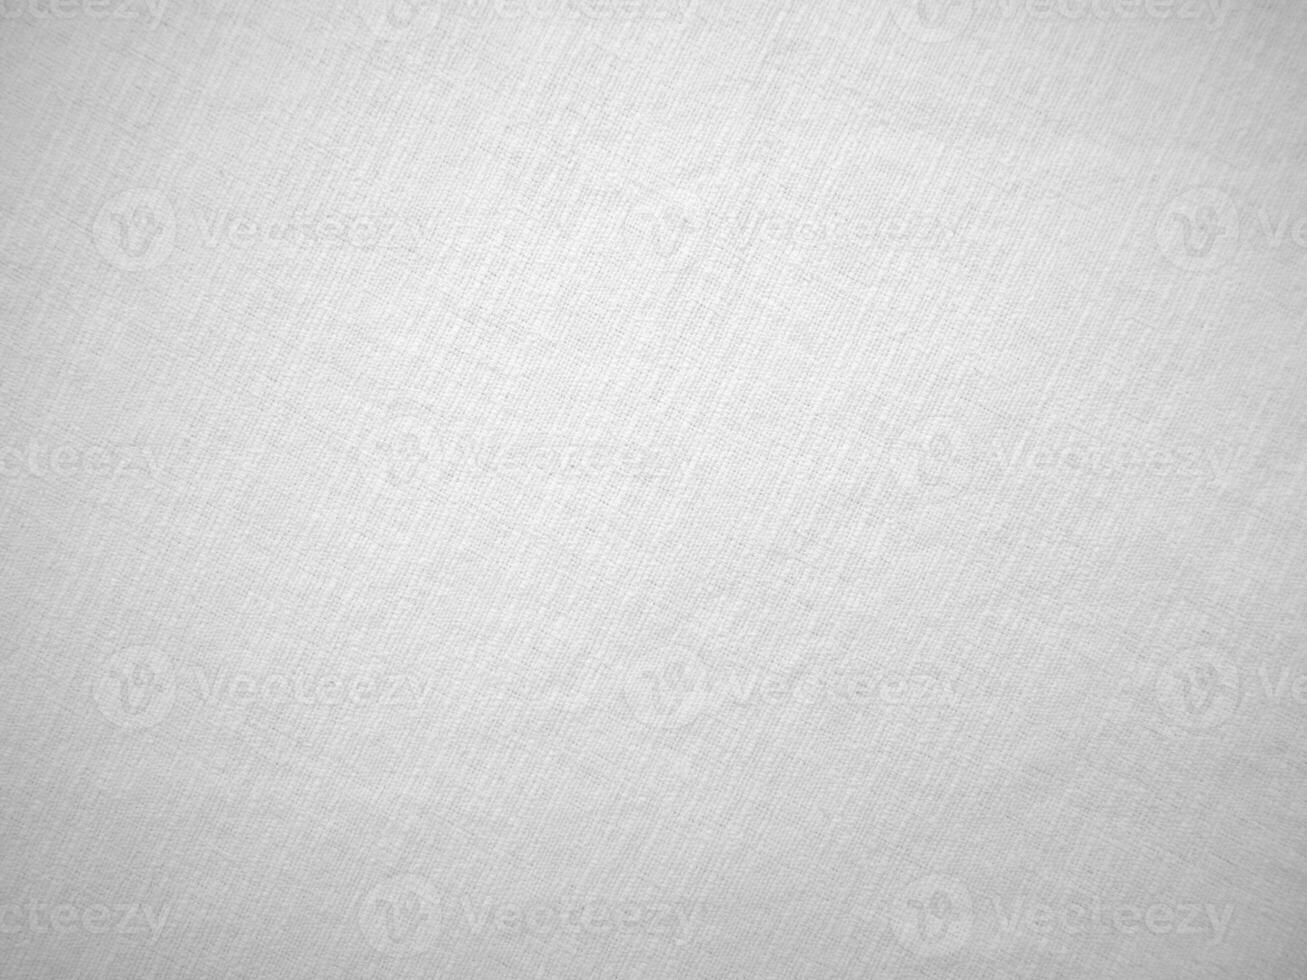 blanco terciopelo tela textura usado como antecedentes. blanco algodón antecedentes de suave y suave textil material. allí es espacio para texto. foto